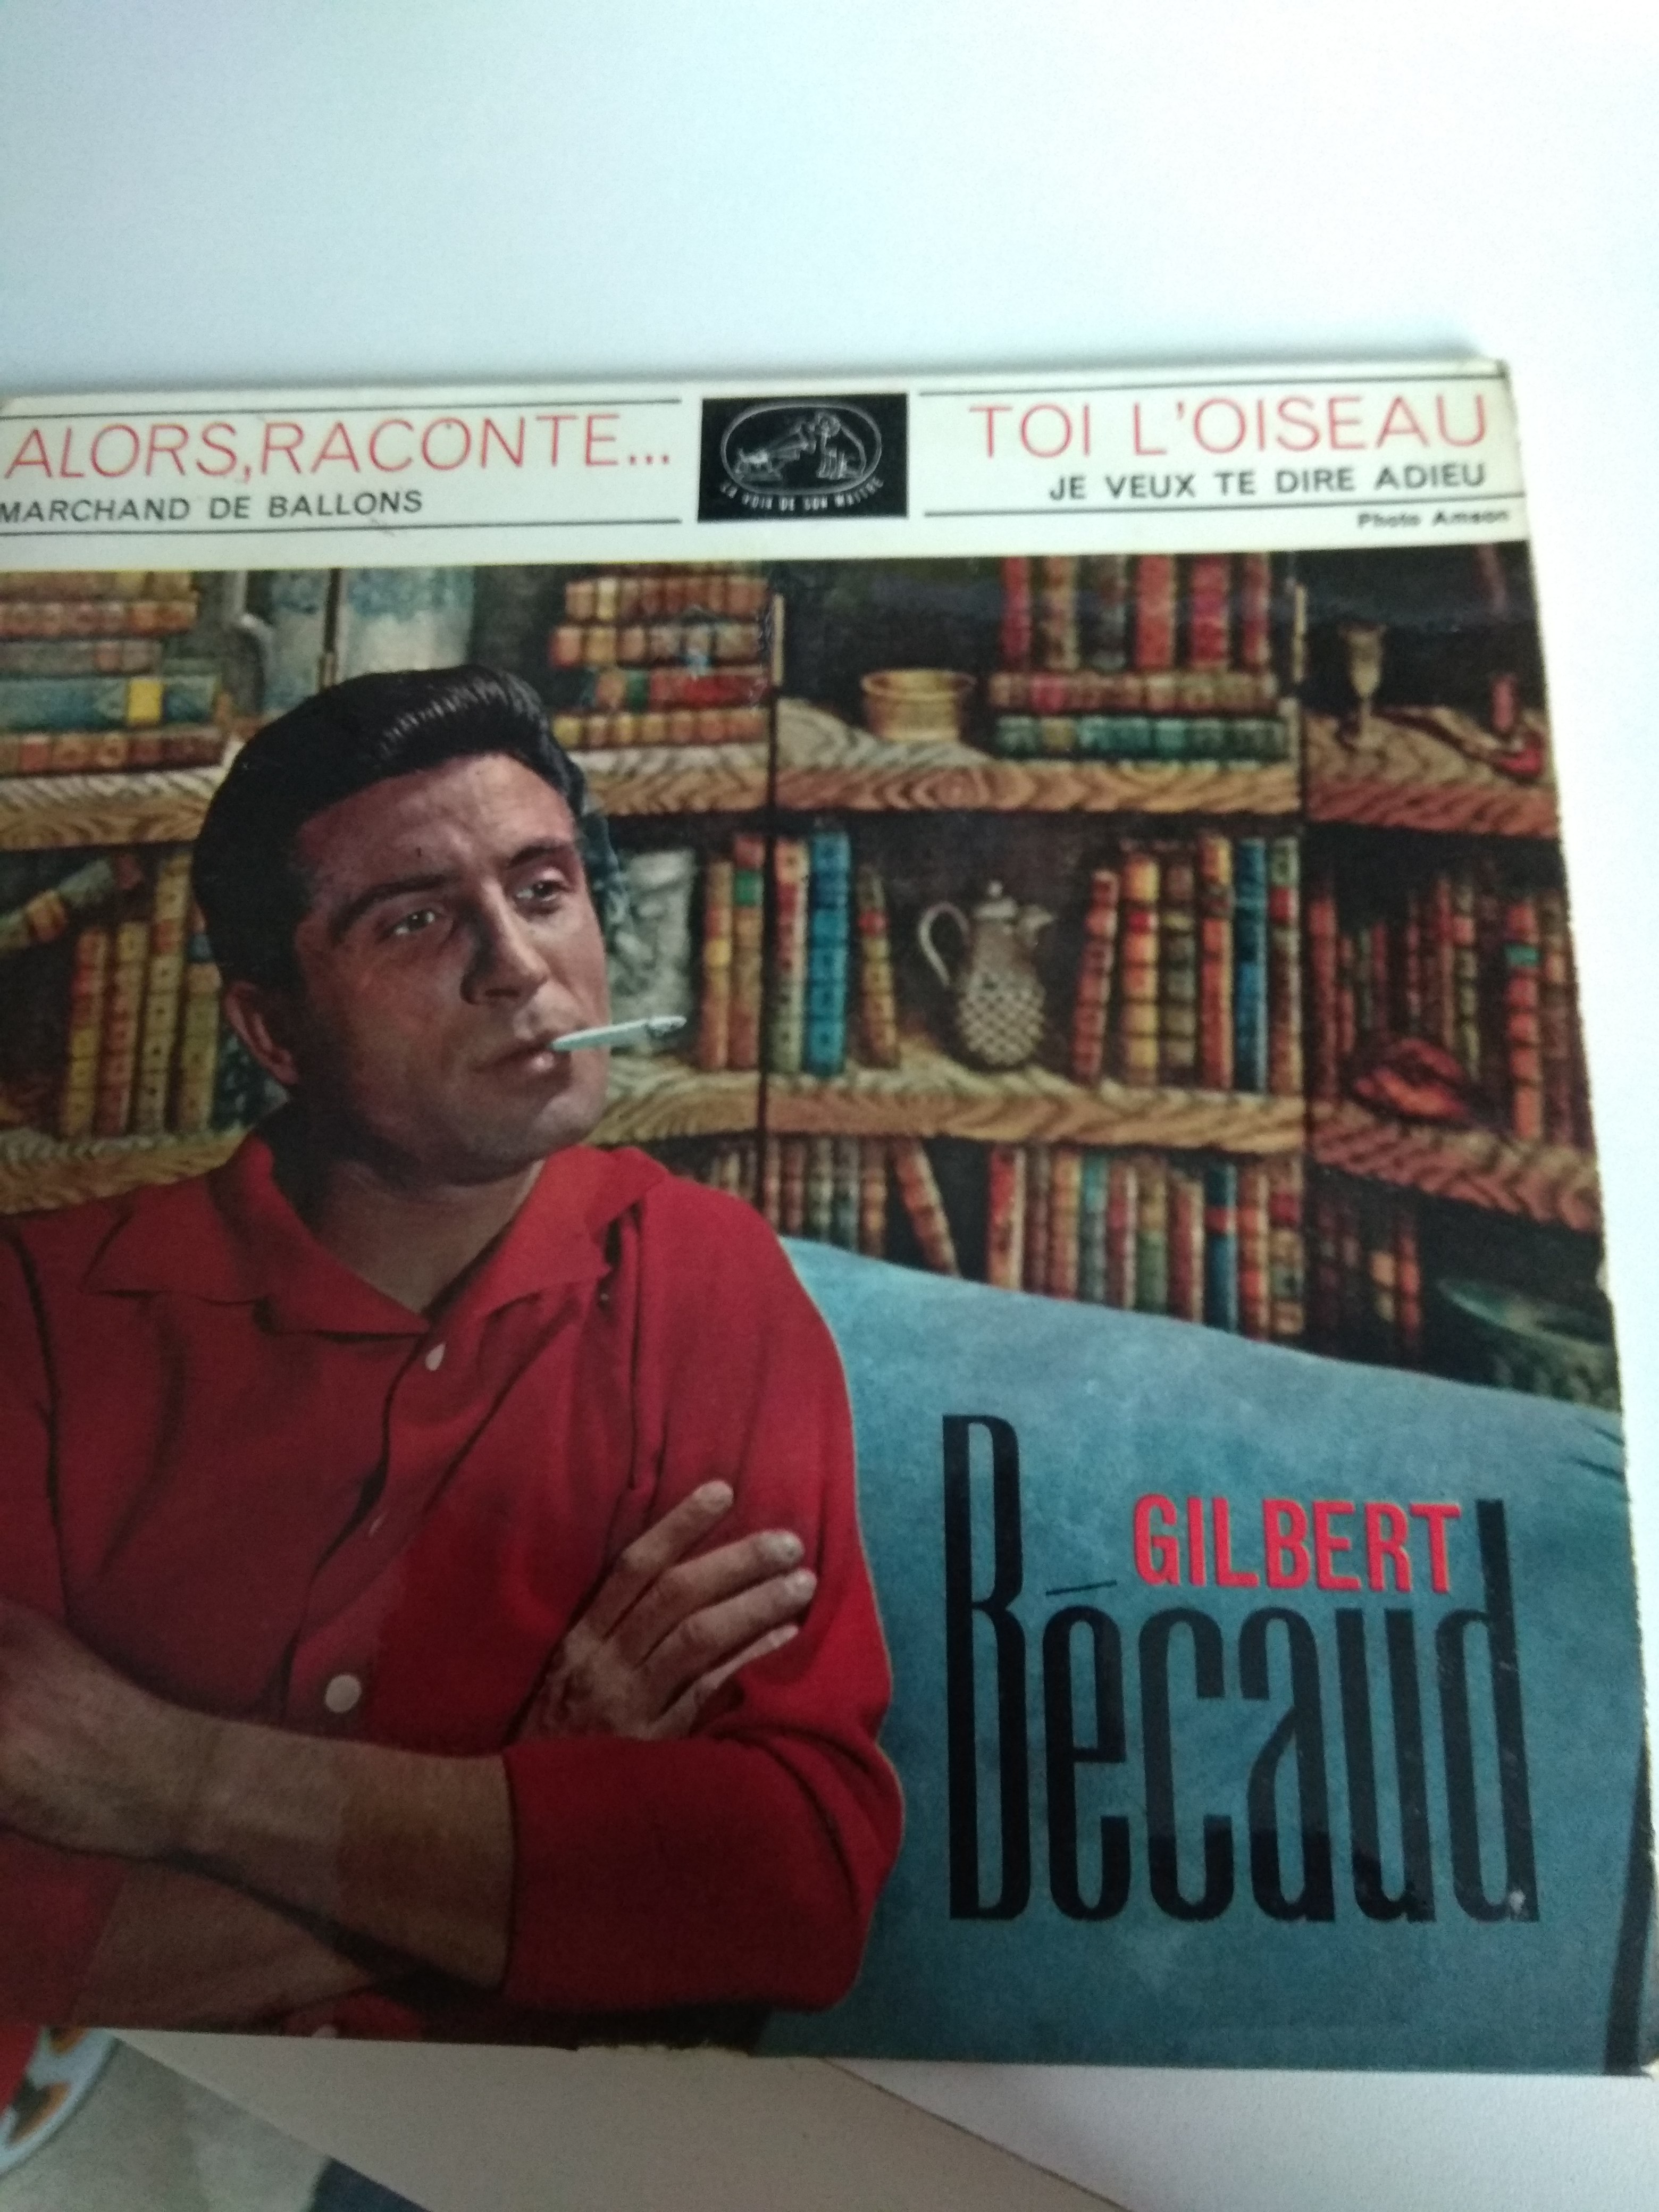 Acheter disque vinyle Gilbert Becaud ALORS RACONTE / MARCHAND DE BALLONS/ TOI L OISEAU/ JE VEUX TE DIRE ADIEU a vendre